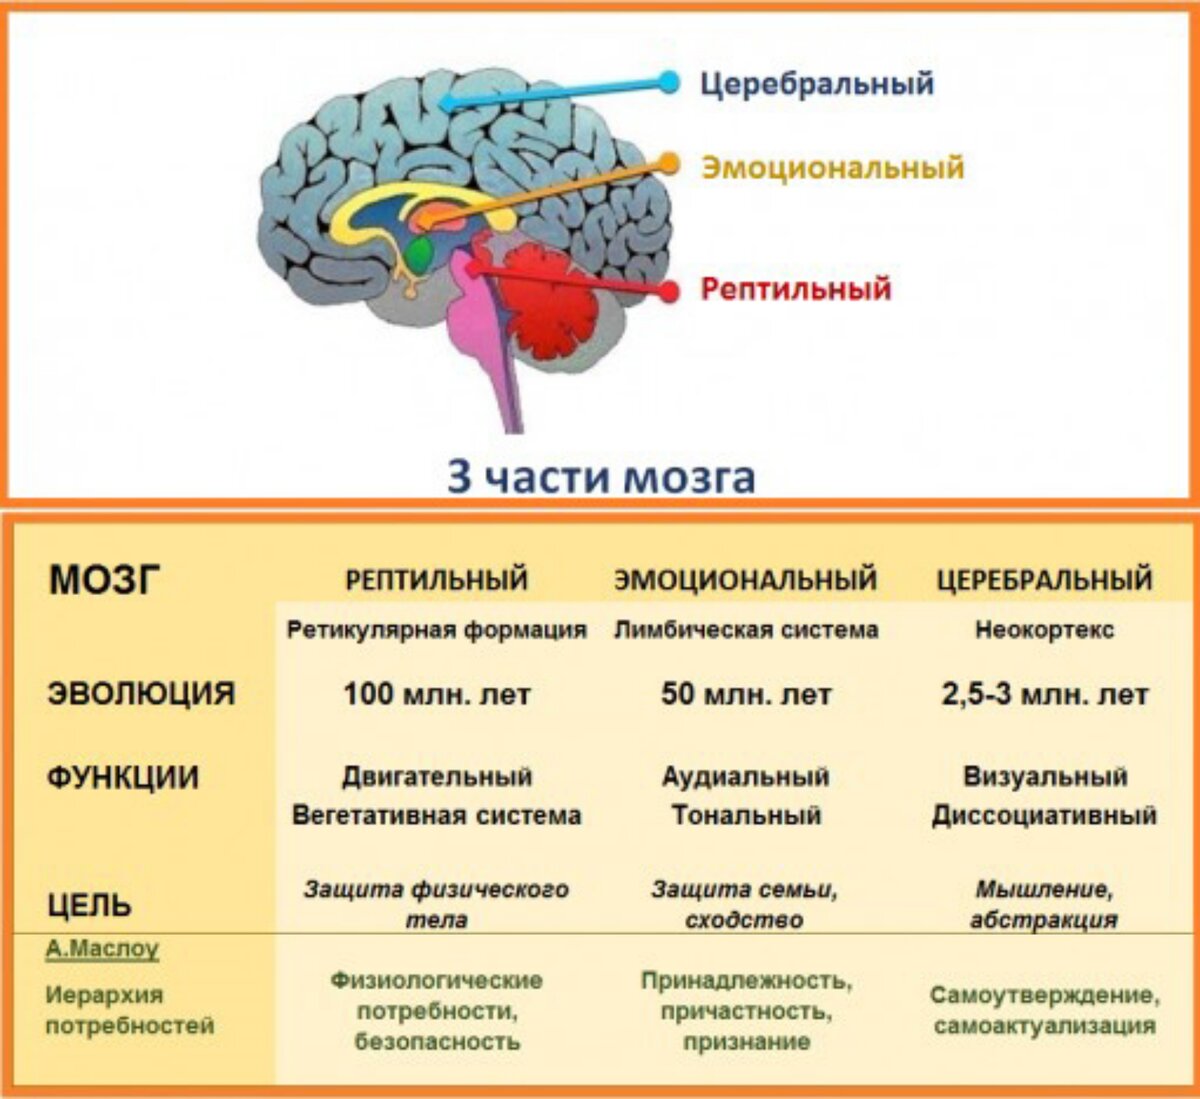 3 слоя мозга. Рептильный мозг и лимбическая система. Отделы мозга рептильный мозг. Рептильный мозг и неокортекс. Строение мозга неокортекс.